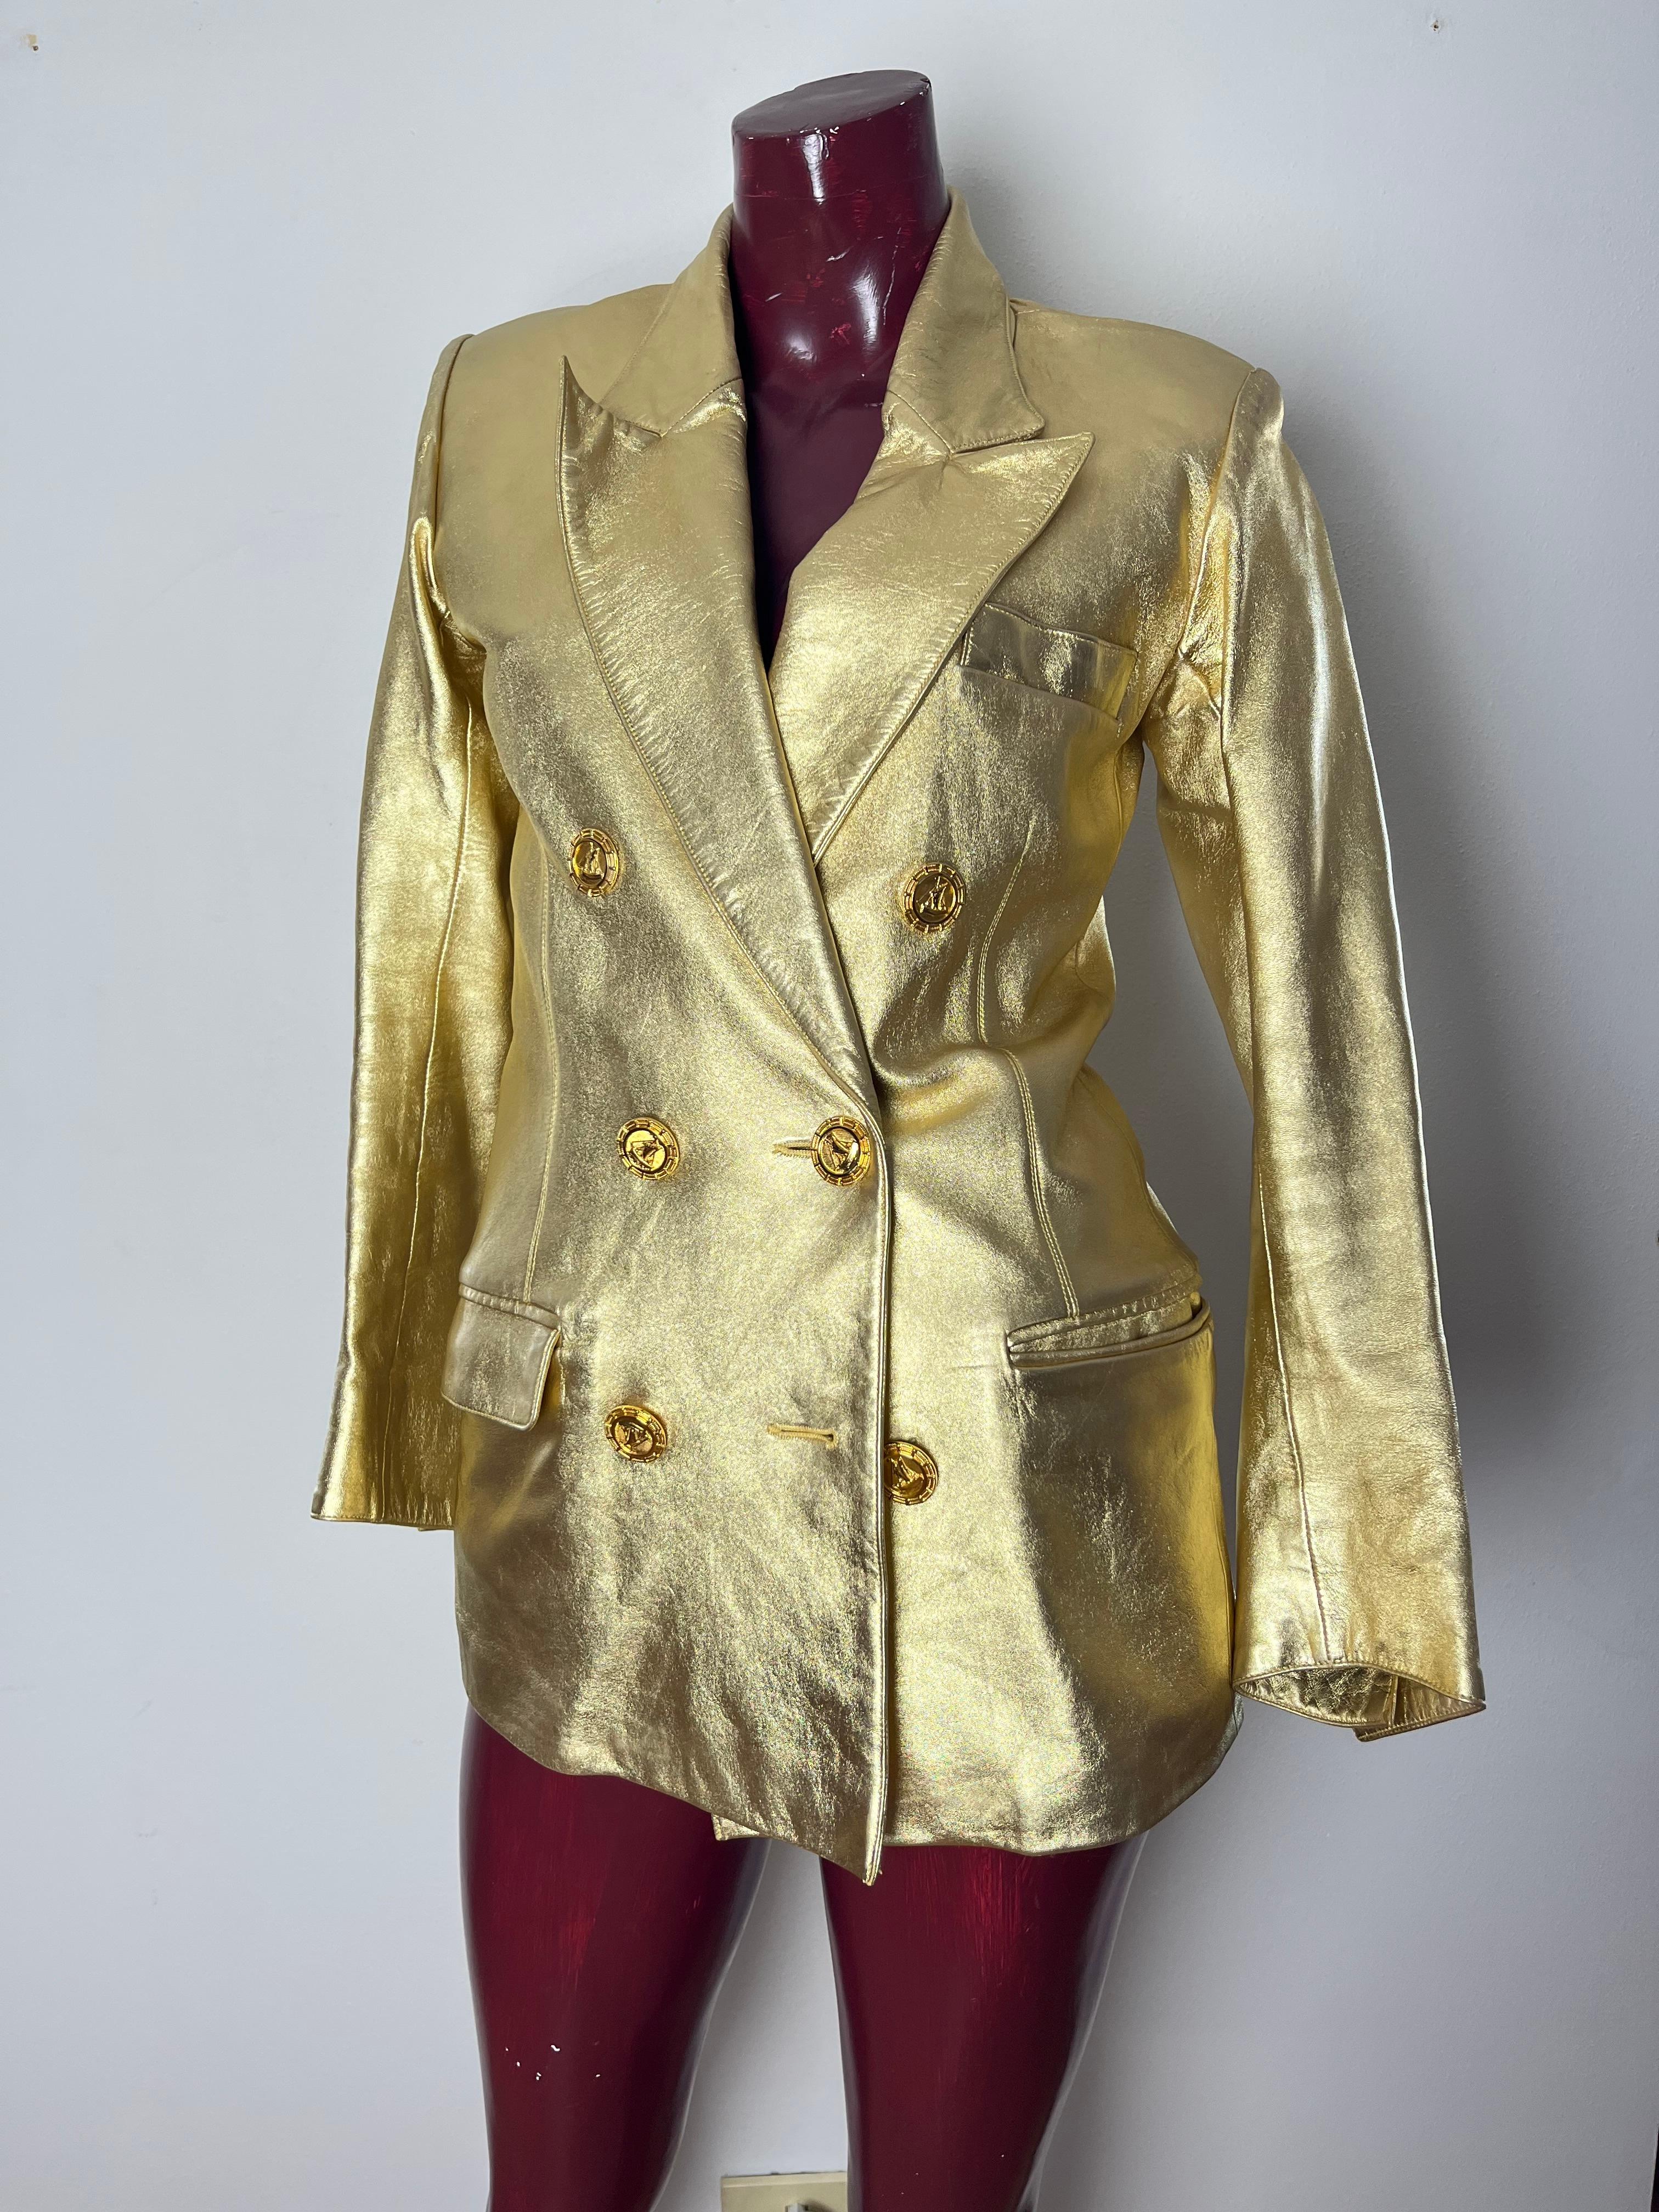 Iconica giacca YSL in pelle di capretto dorata circa 1985.  giacca doppio petto  non avvitata ma dritta .Bottoni con vascello in bronzo dorato Fodera in charmeuse di seta nera. Realizzato da YSL Haute Couture.  Iconico è un termine spesso